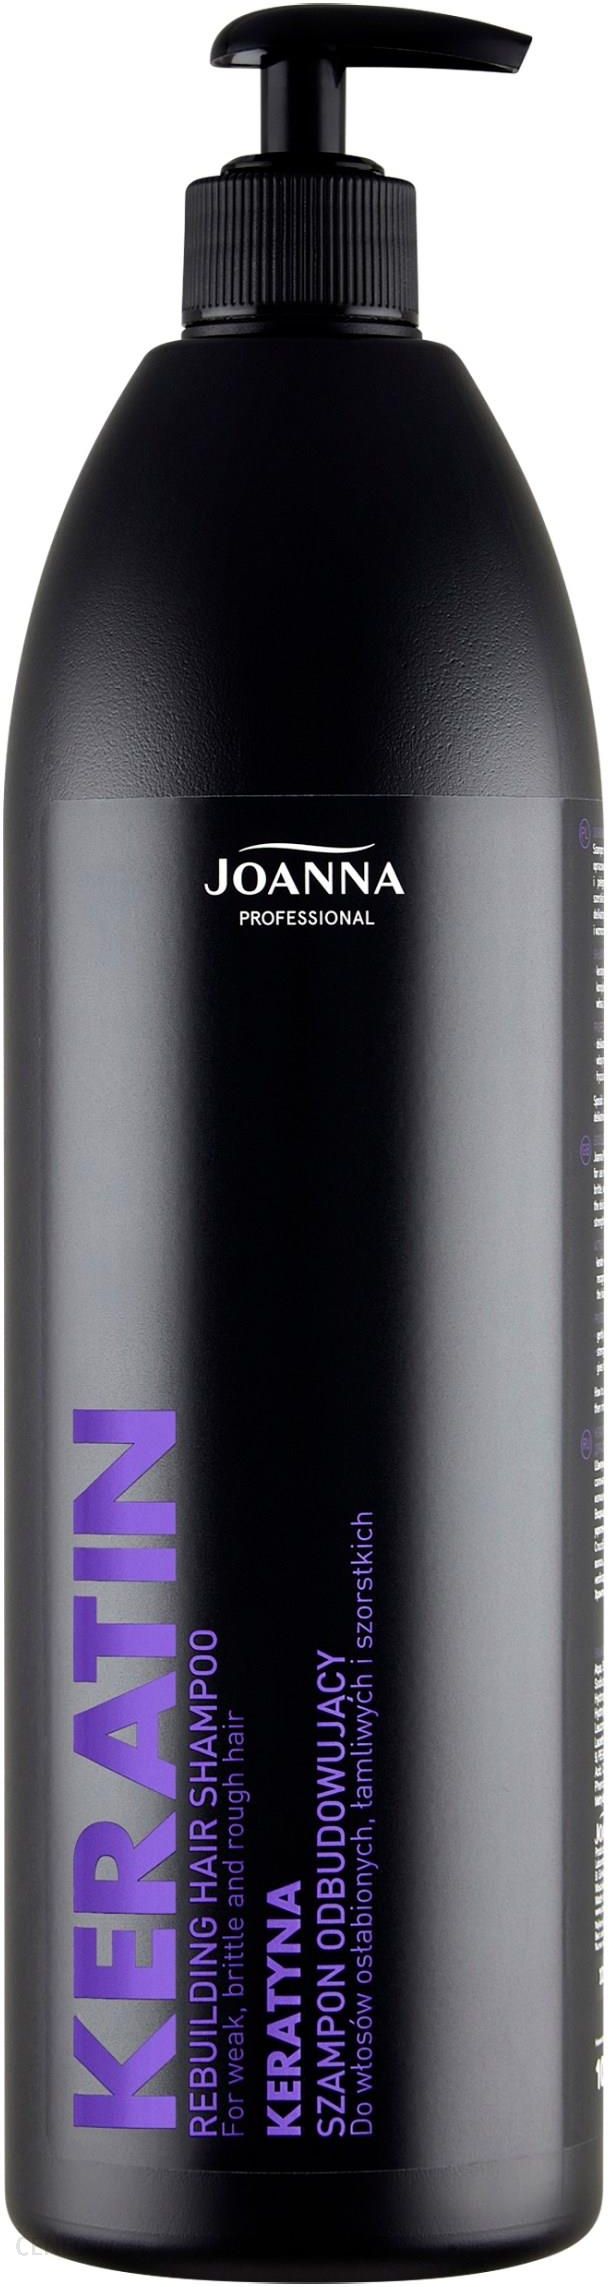 joanna professional szampon do włosów opionie